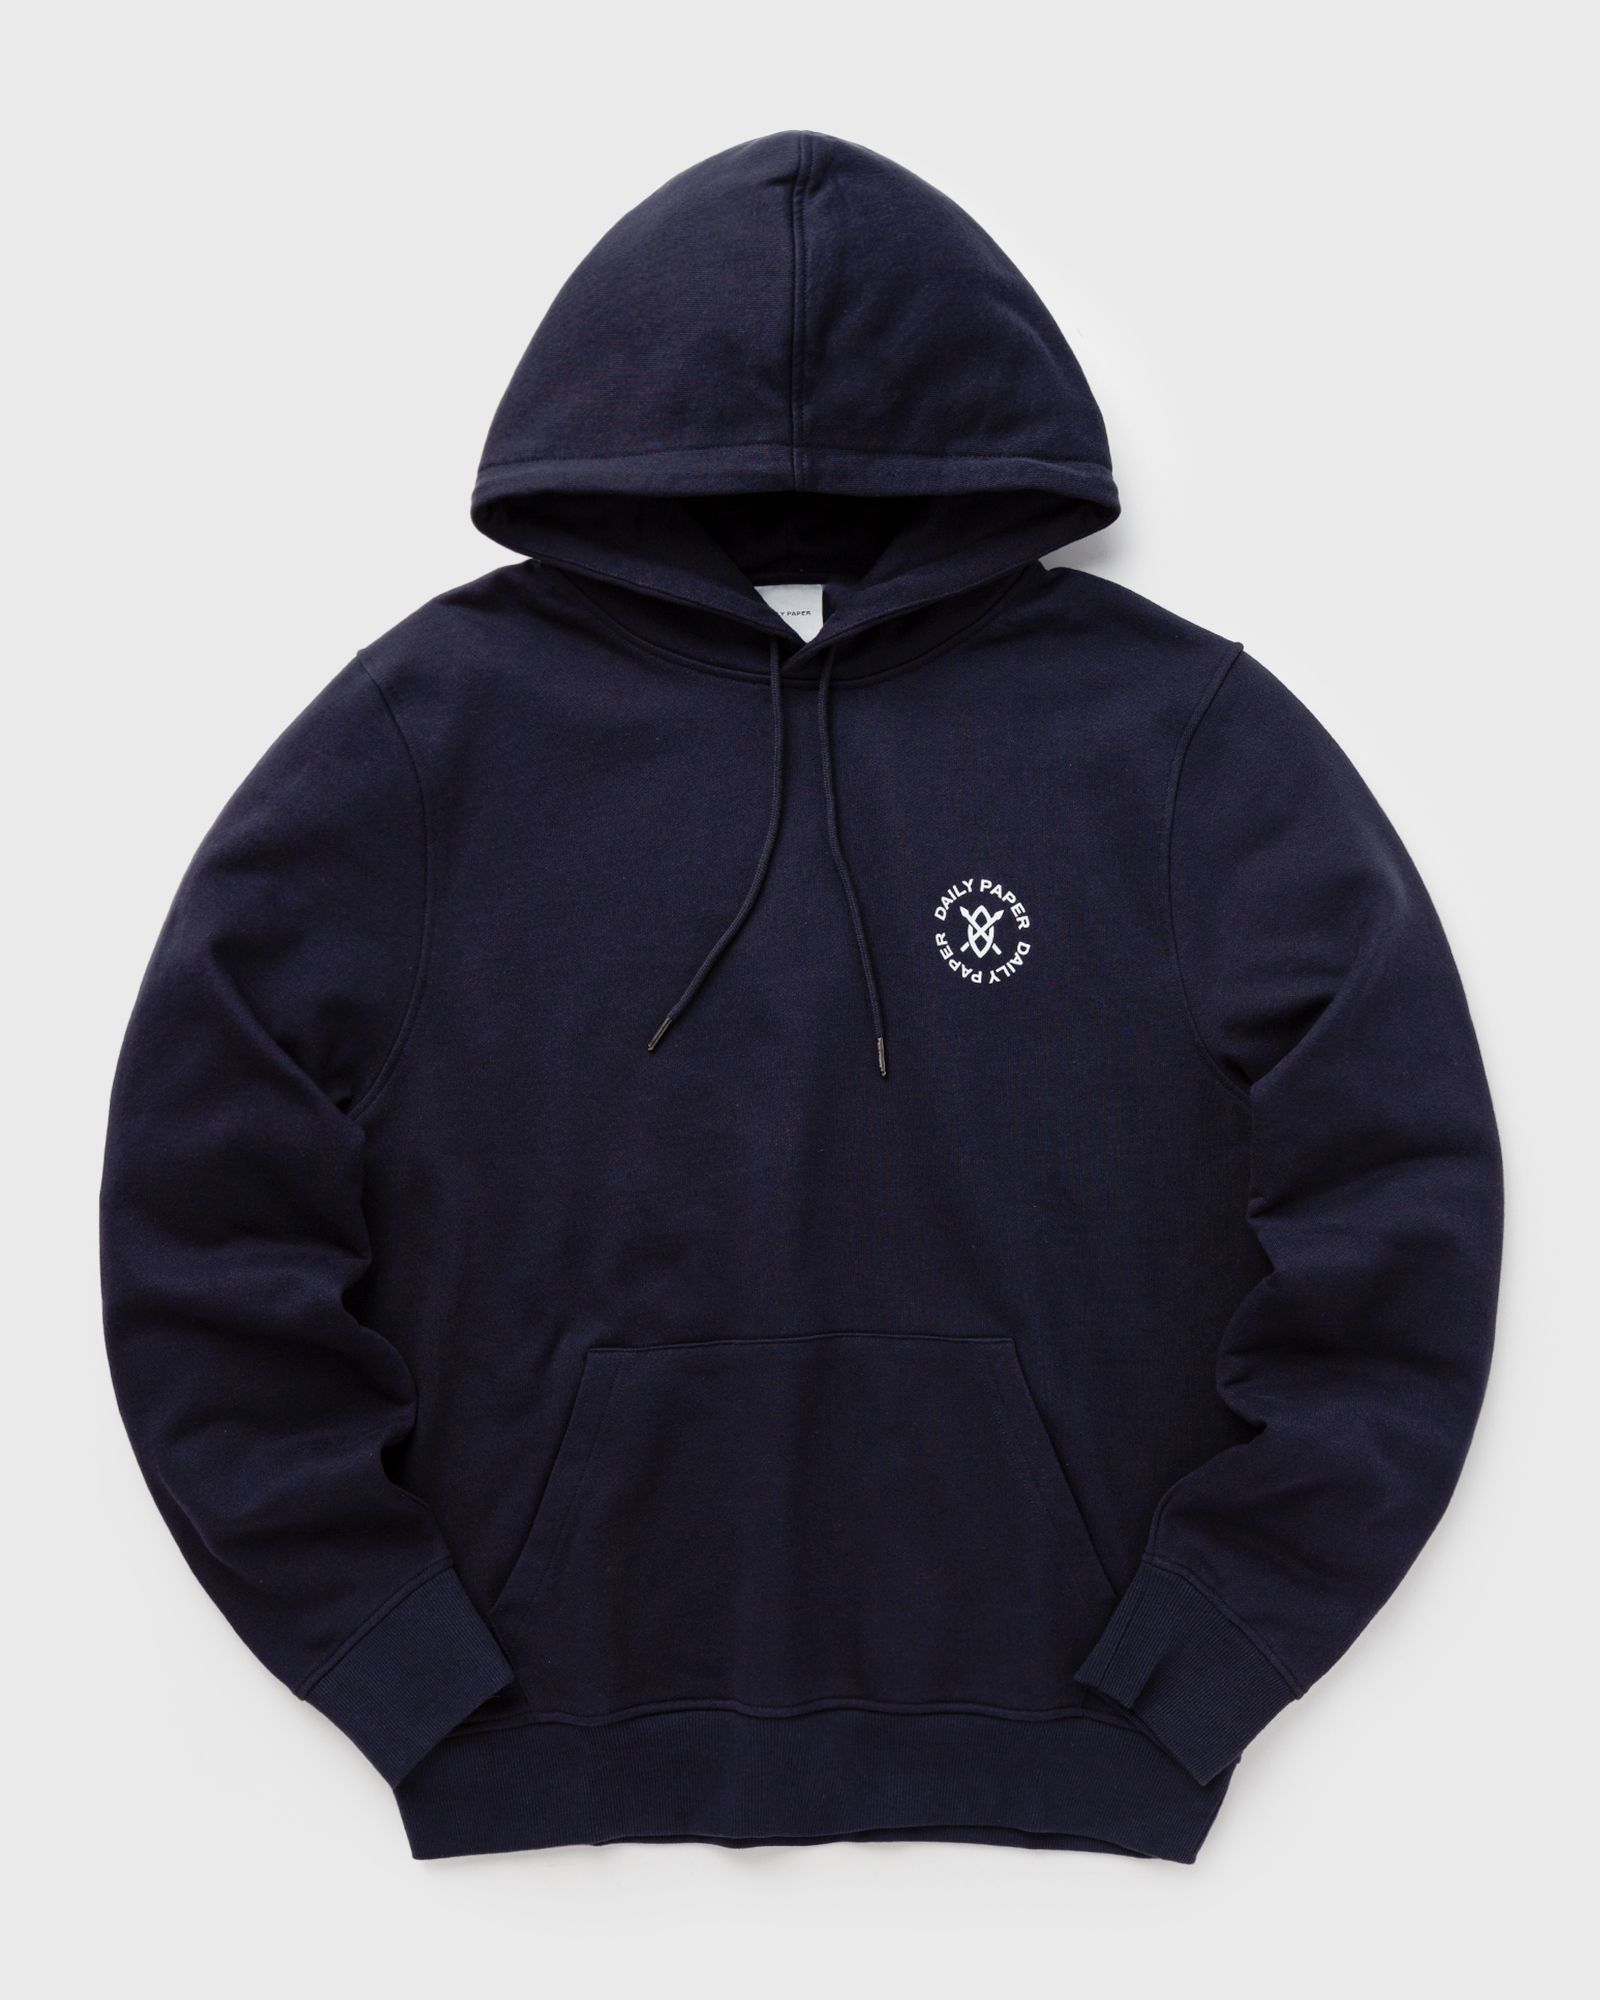 Daily Paper - circle hoodie men hoodies blue in größe:l